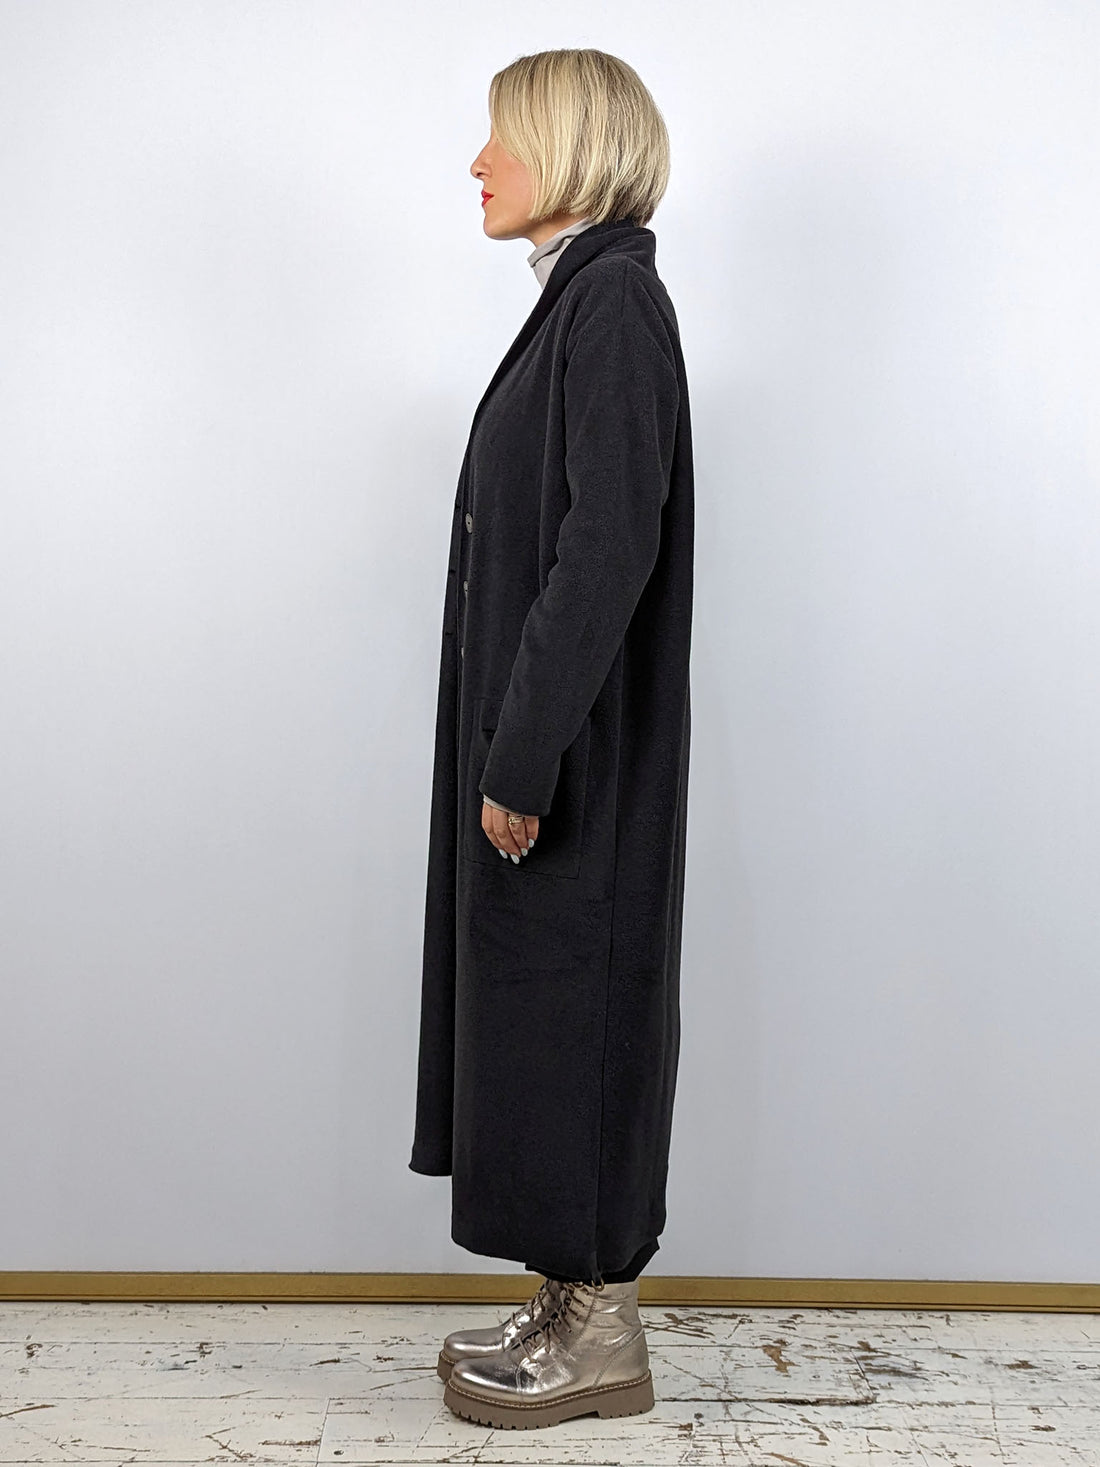 Henriette Steffensen 7162 Long Fleece Cardigan - SOFT BLACK